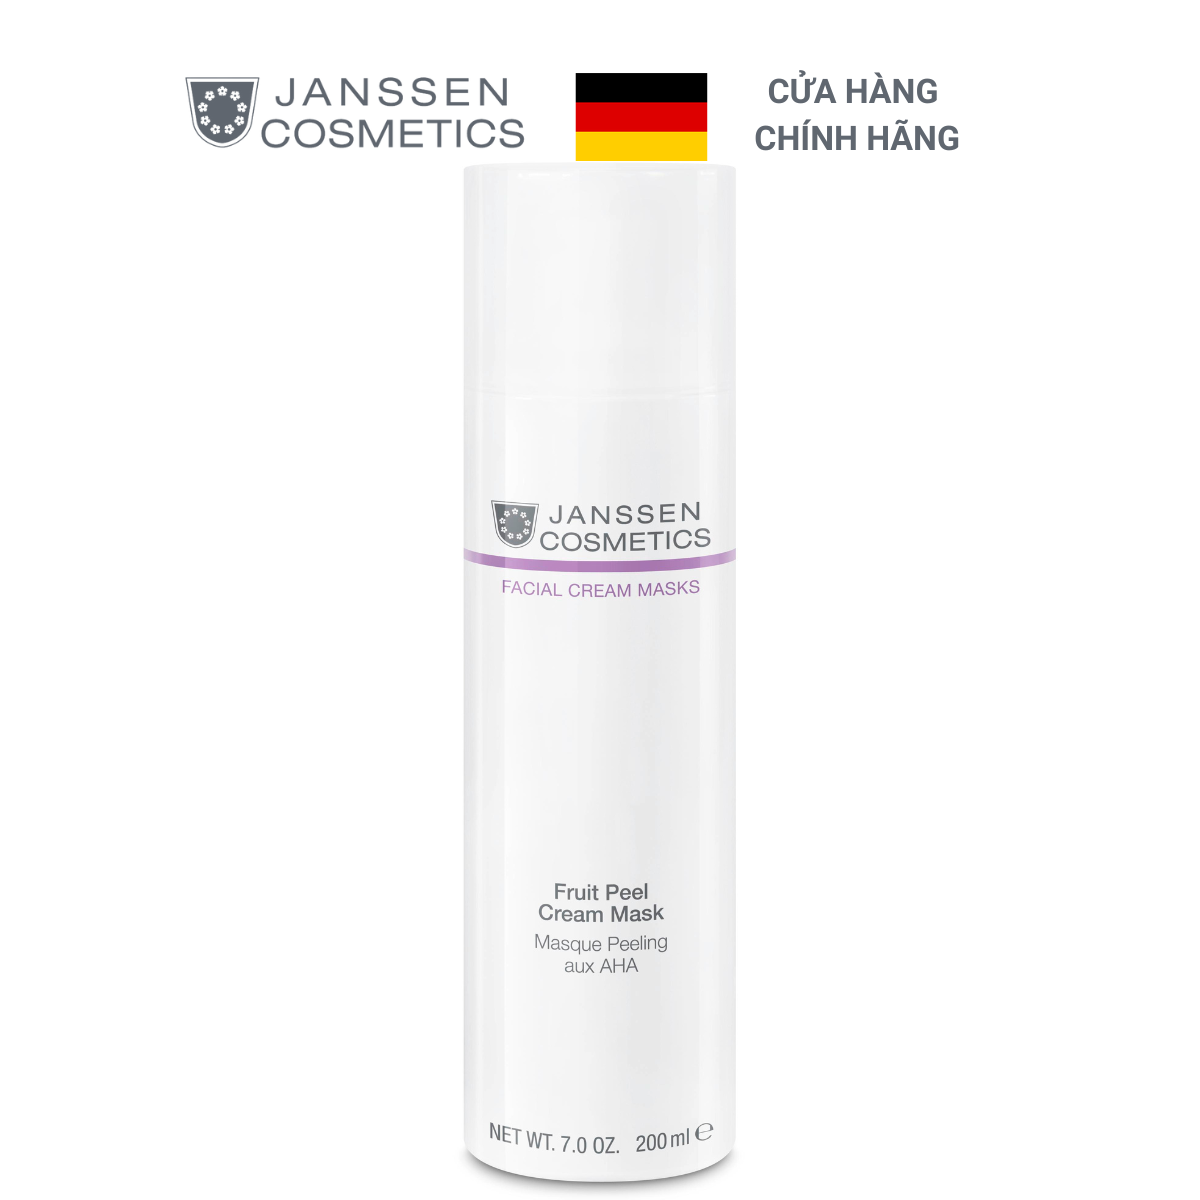  Mặt nạ kem cho da dầu - Janssen Cosmetics Fruit Peel Cream Mask 200ml 